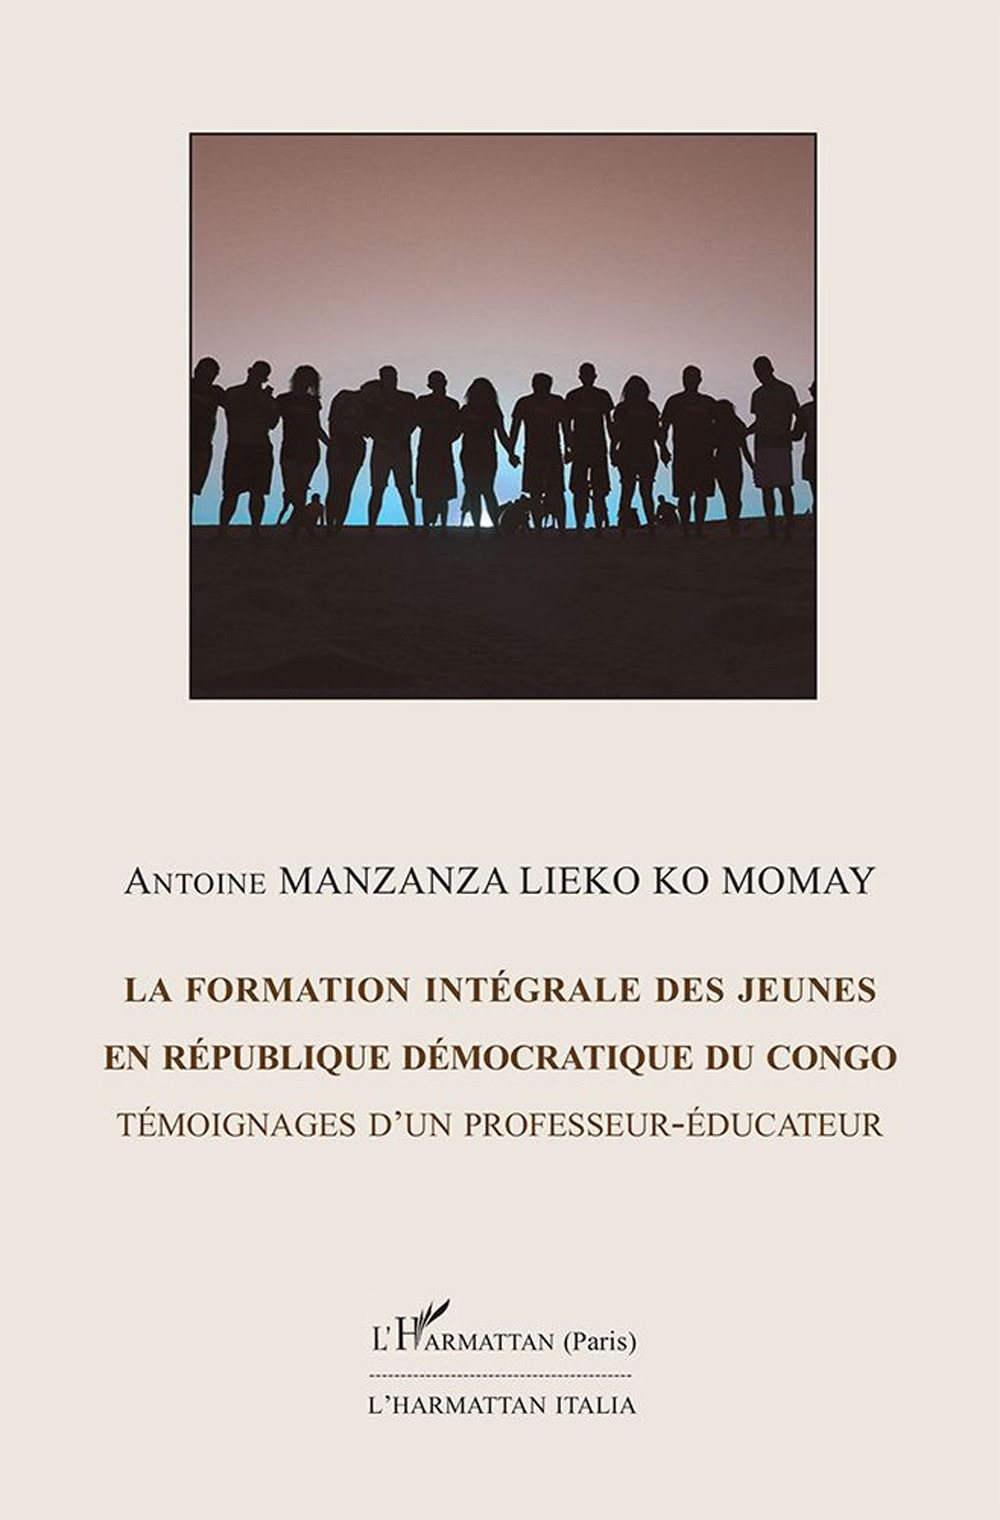 La formation intégrale des jeunes en république démocratique du Congo. Témoignage d'un professeur-éducateur